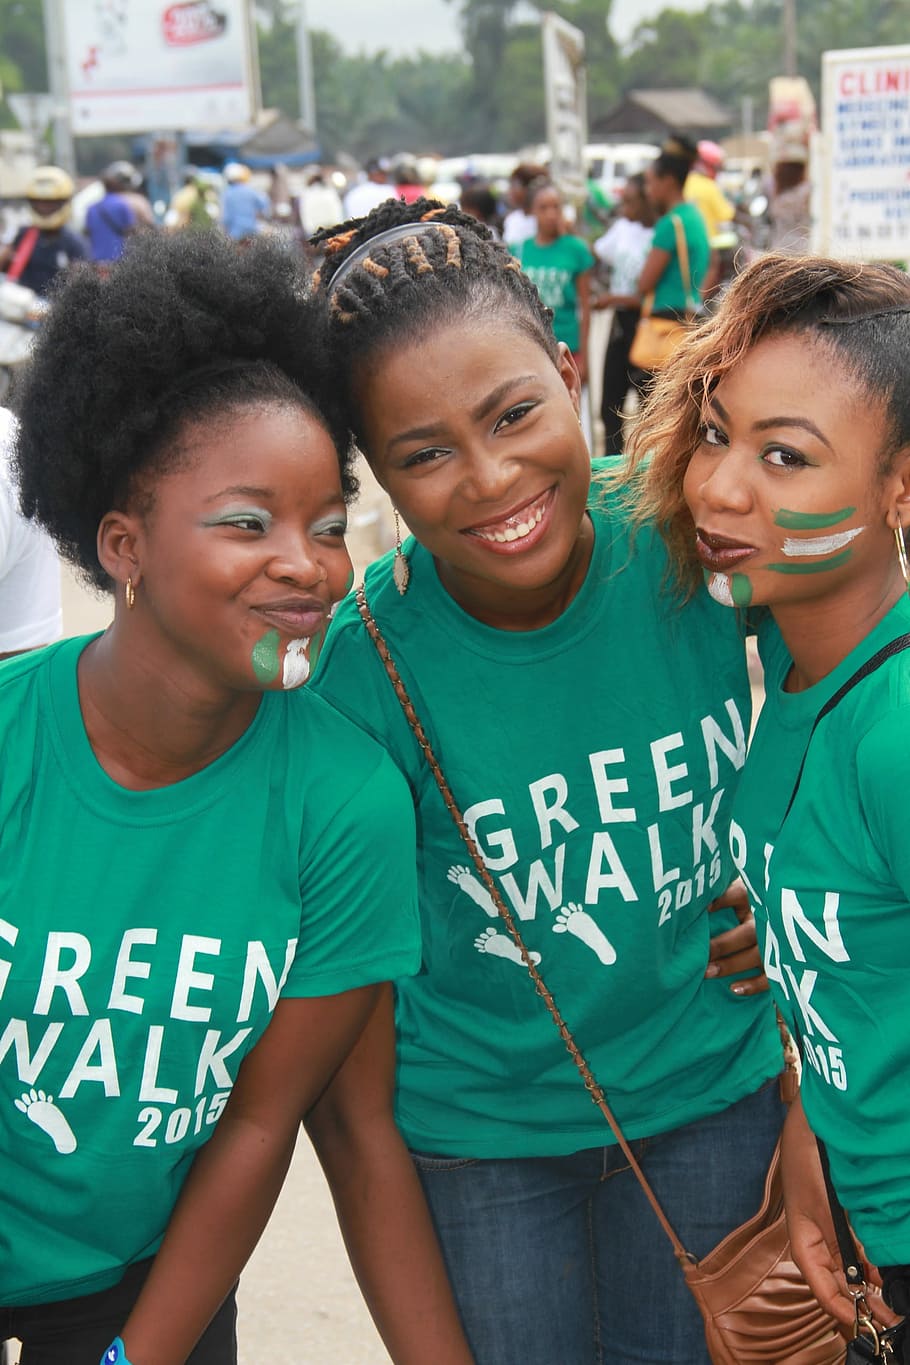 Jovens, Meninas, Sorriso, Nigerianos, Cotonou, caminhada verde, rosto feliz, alegre, em pé, vista frontal